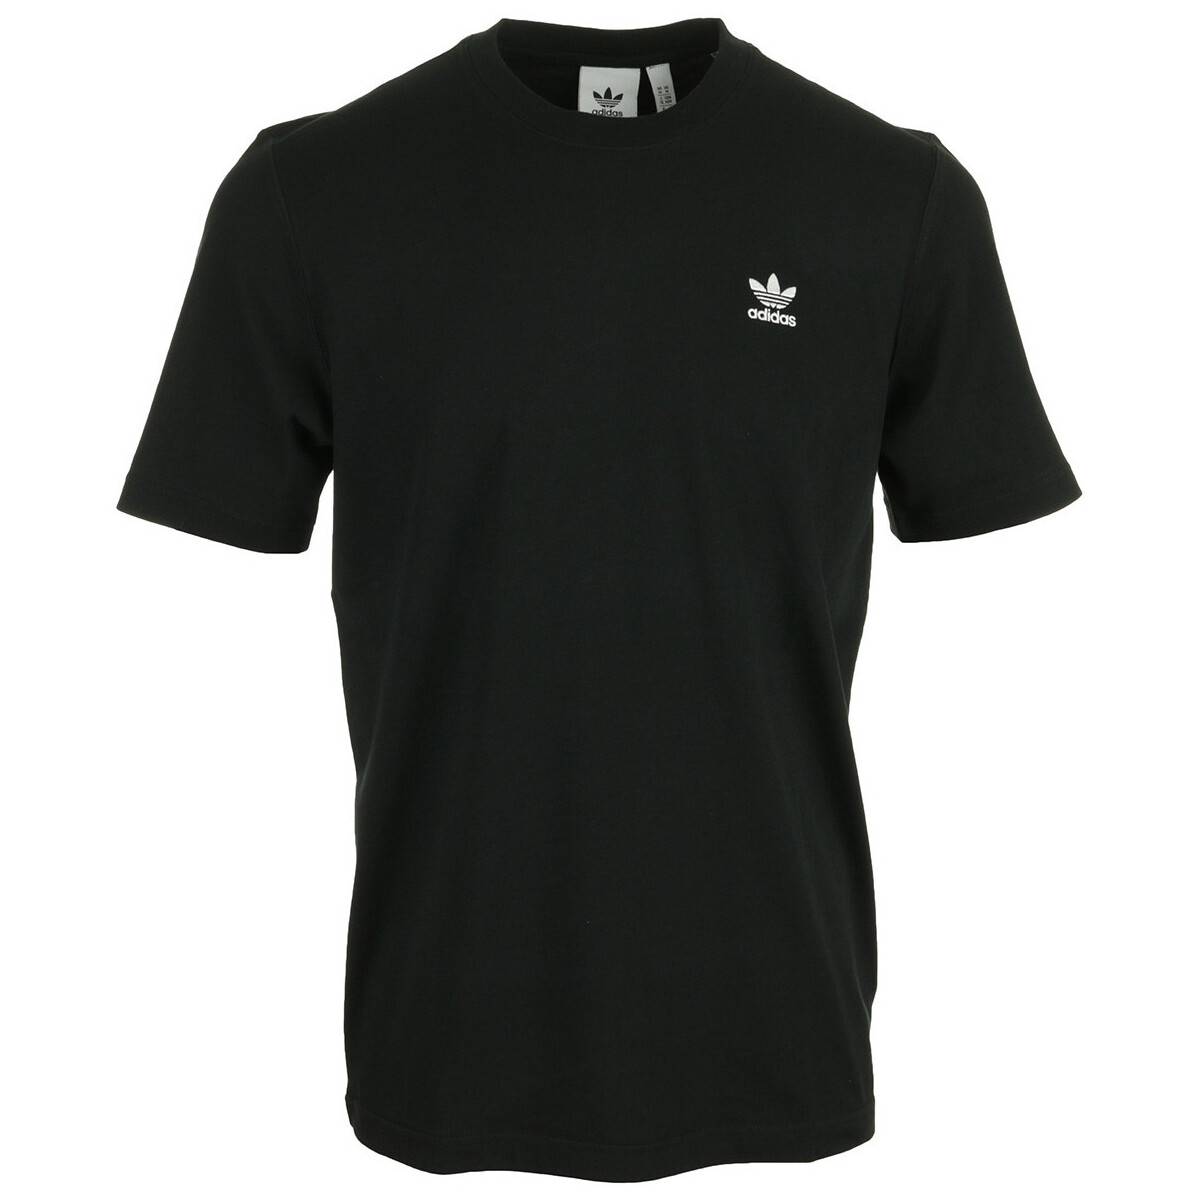 Vêtements Homme T-shirts manches courtes adidas Originals Essential Tee Noir